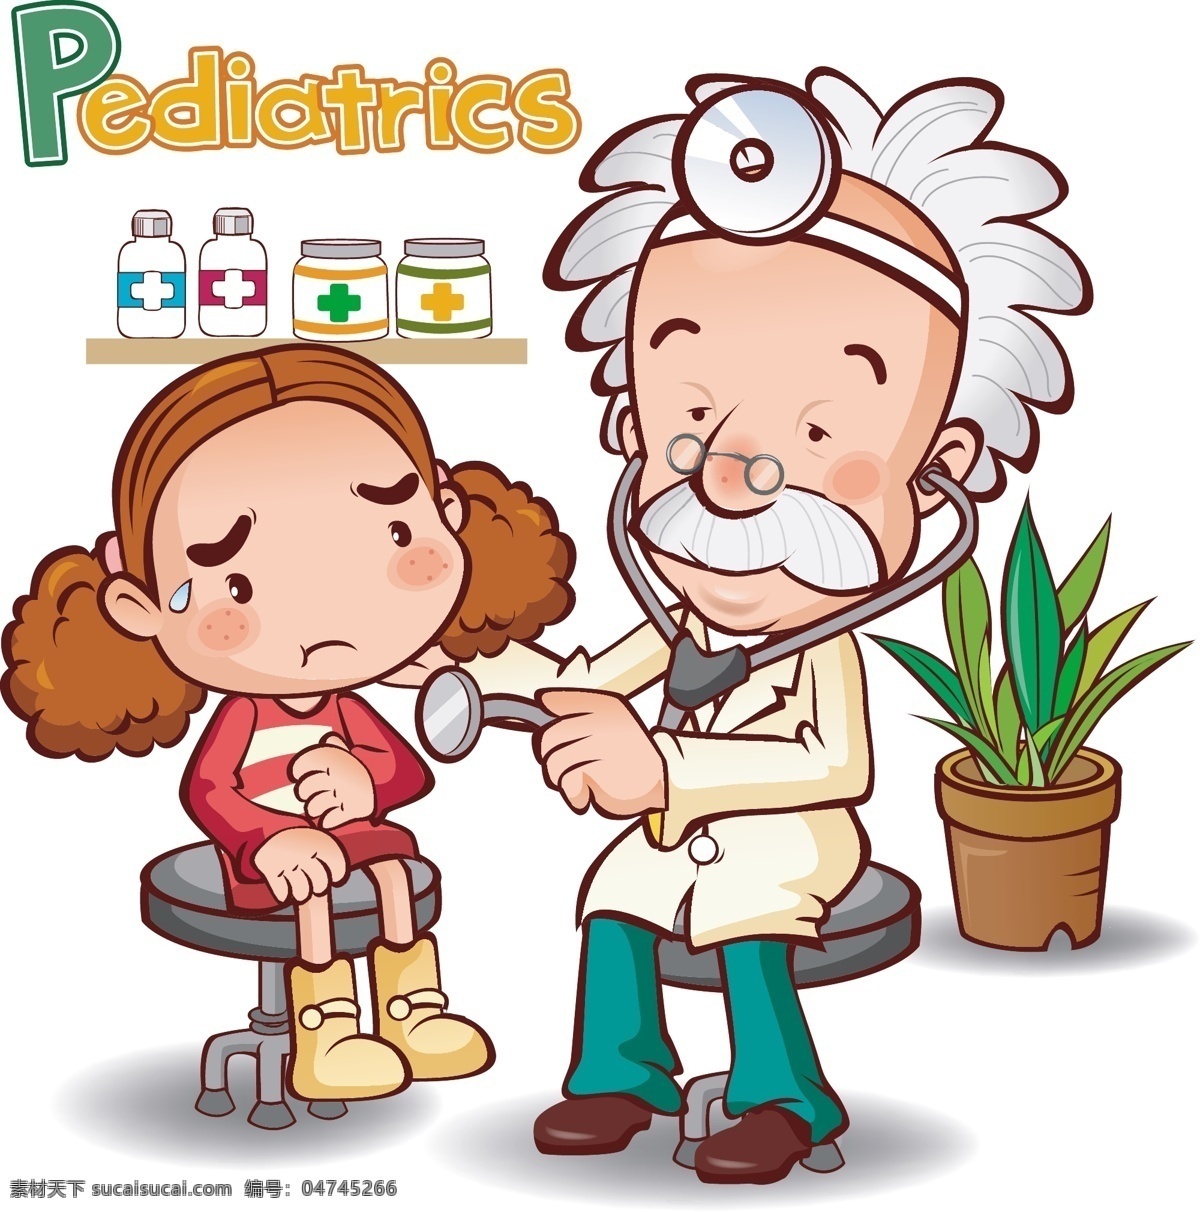 医生 病人 医院 卡通 动漫 插画 动漫动画 动漫人物 和谐 看病 医护人员 友善 十字标志 小姑娘 可爱